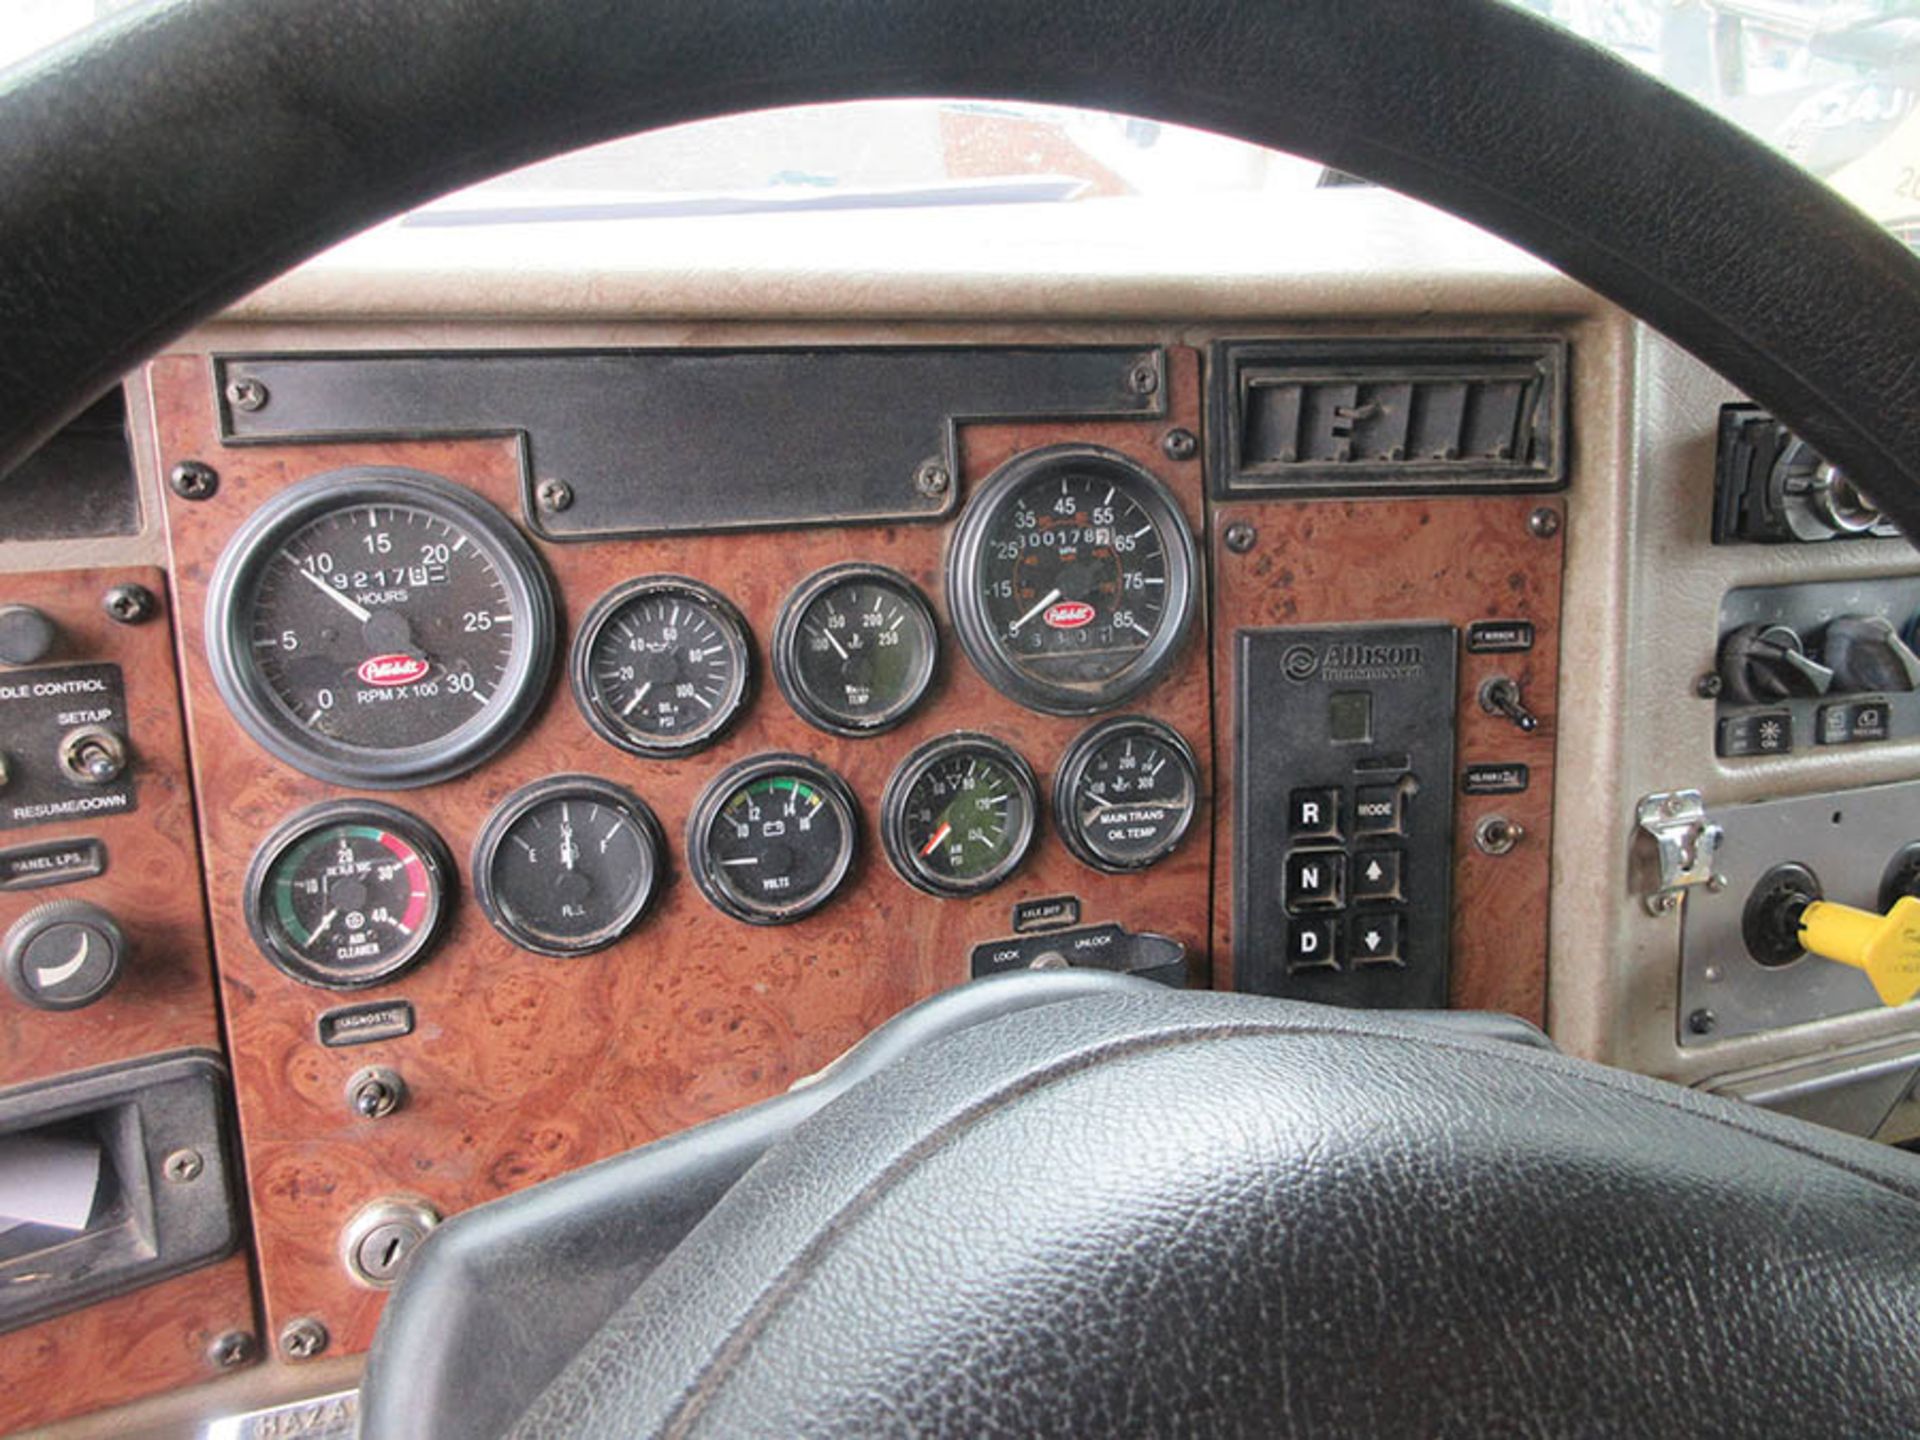 (2006) PETERBILT 335 TANDEM AXLE DUMP TRUCK, 300,178 MILES, ALLISON PUSH-BUTTON AUTOMATIC - Image 12 of 12